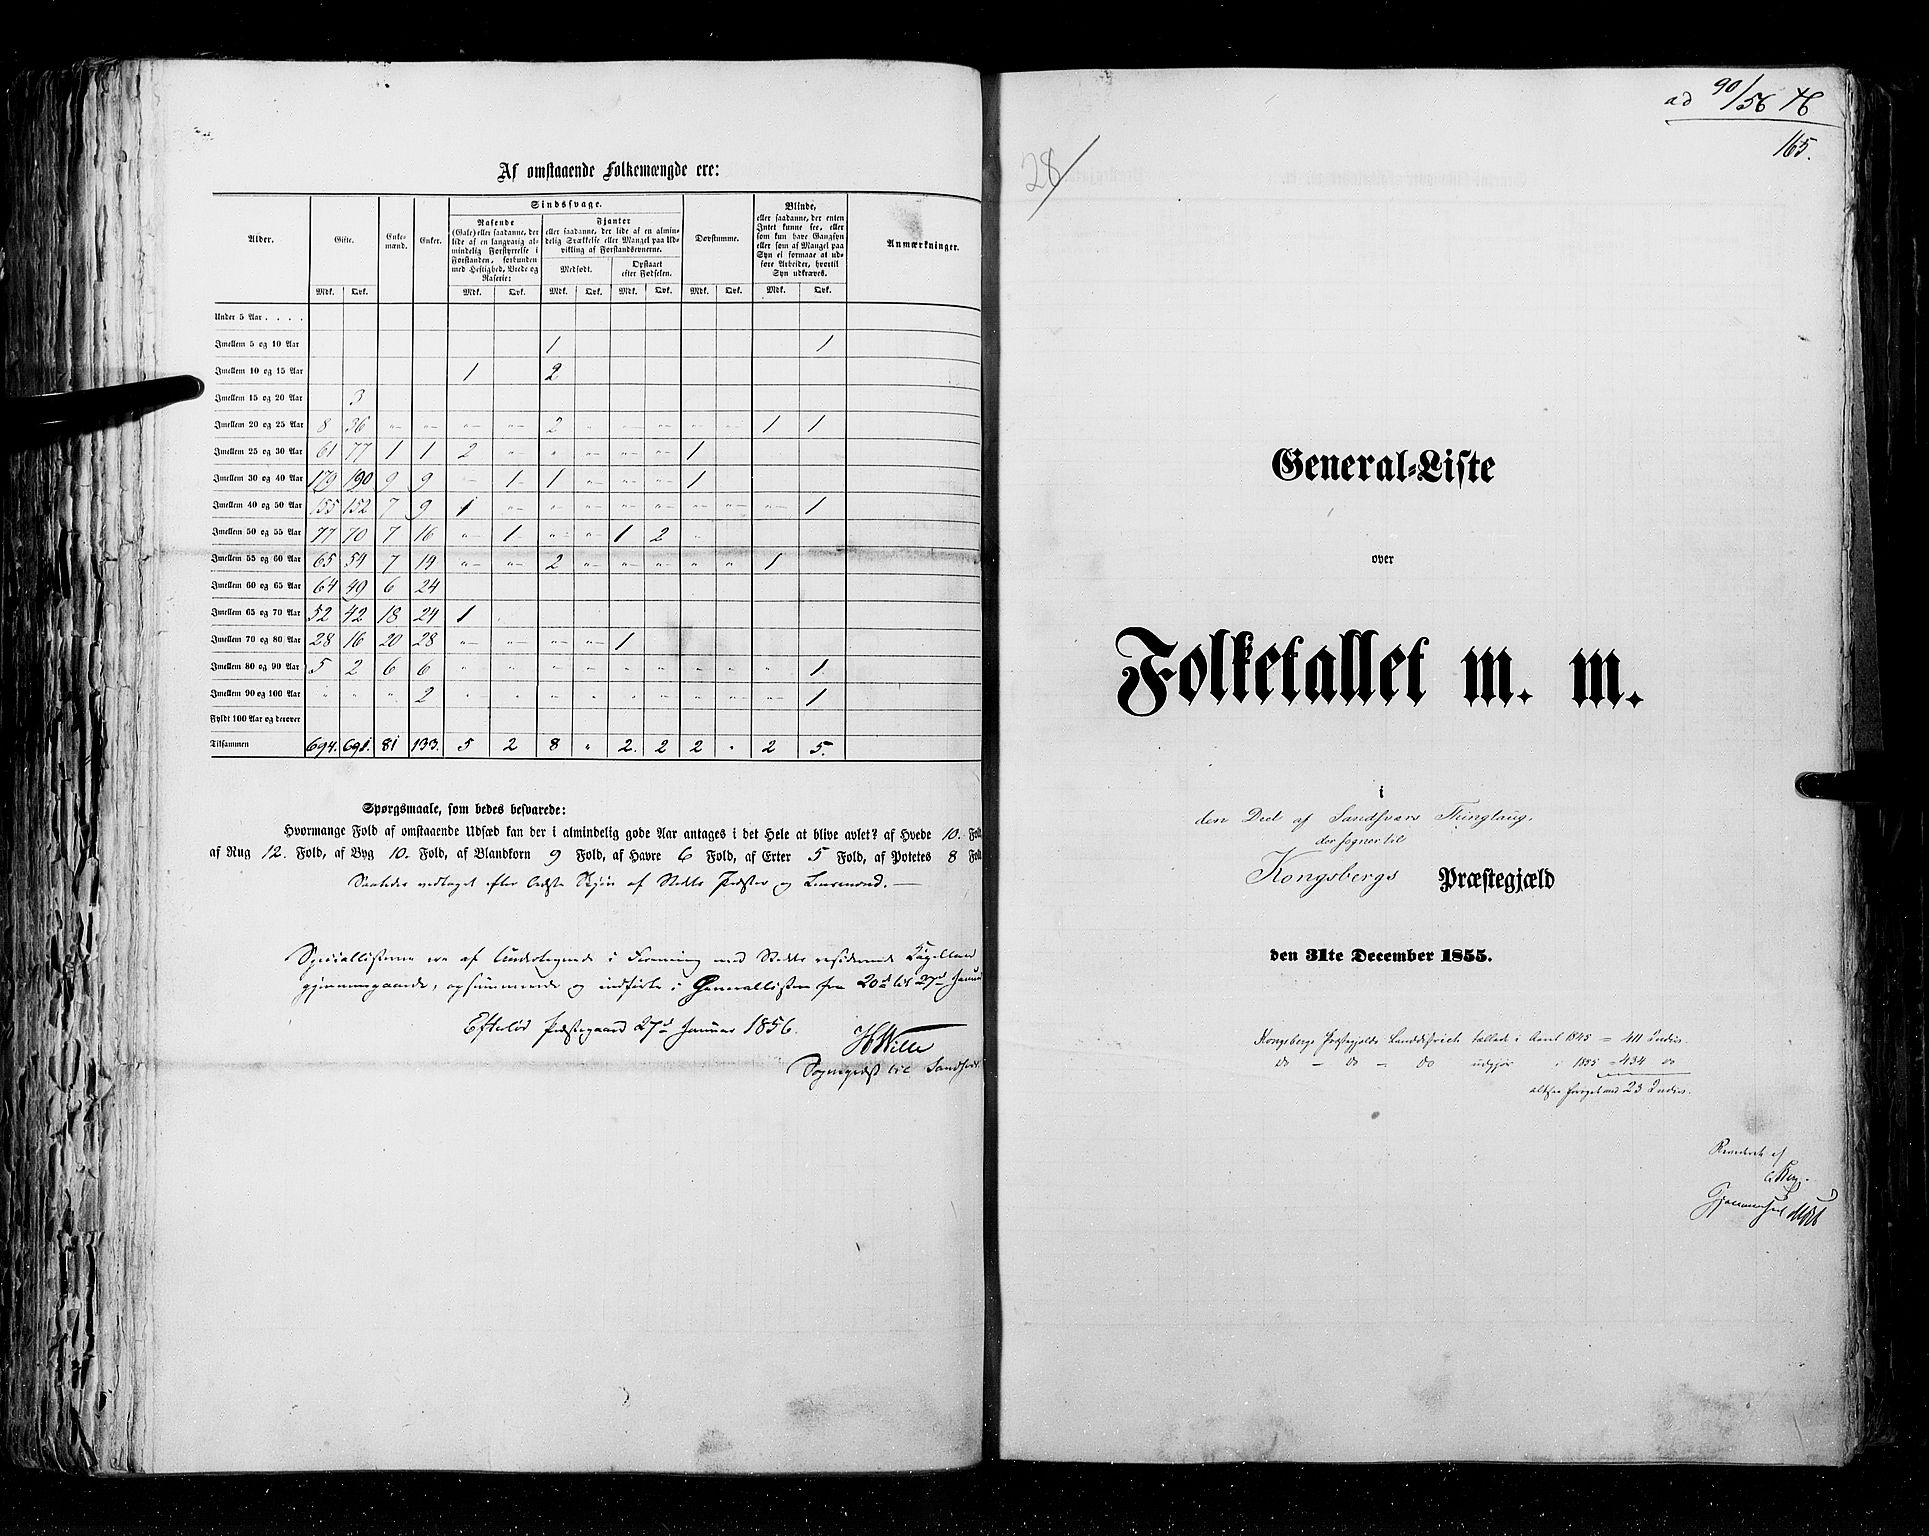 RA, Folketellingen 1855, bind 2: Kristians amt, Buskerud amt og Jarlsberg og Larvik amt, 1855, s. 165